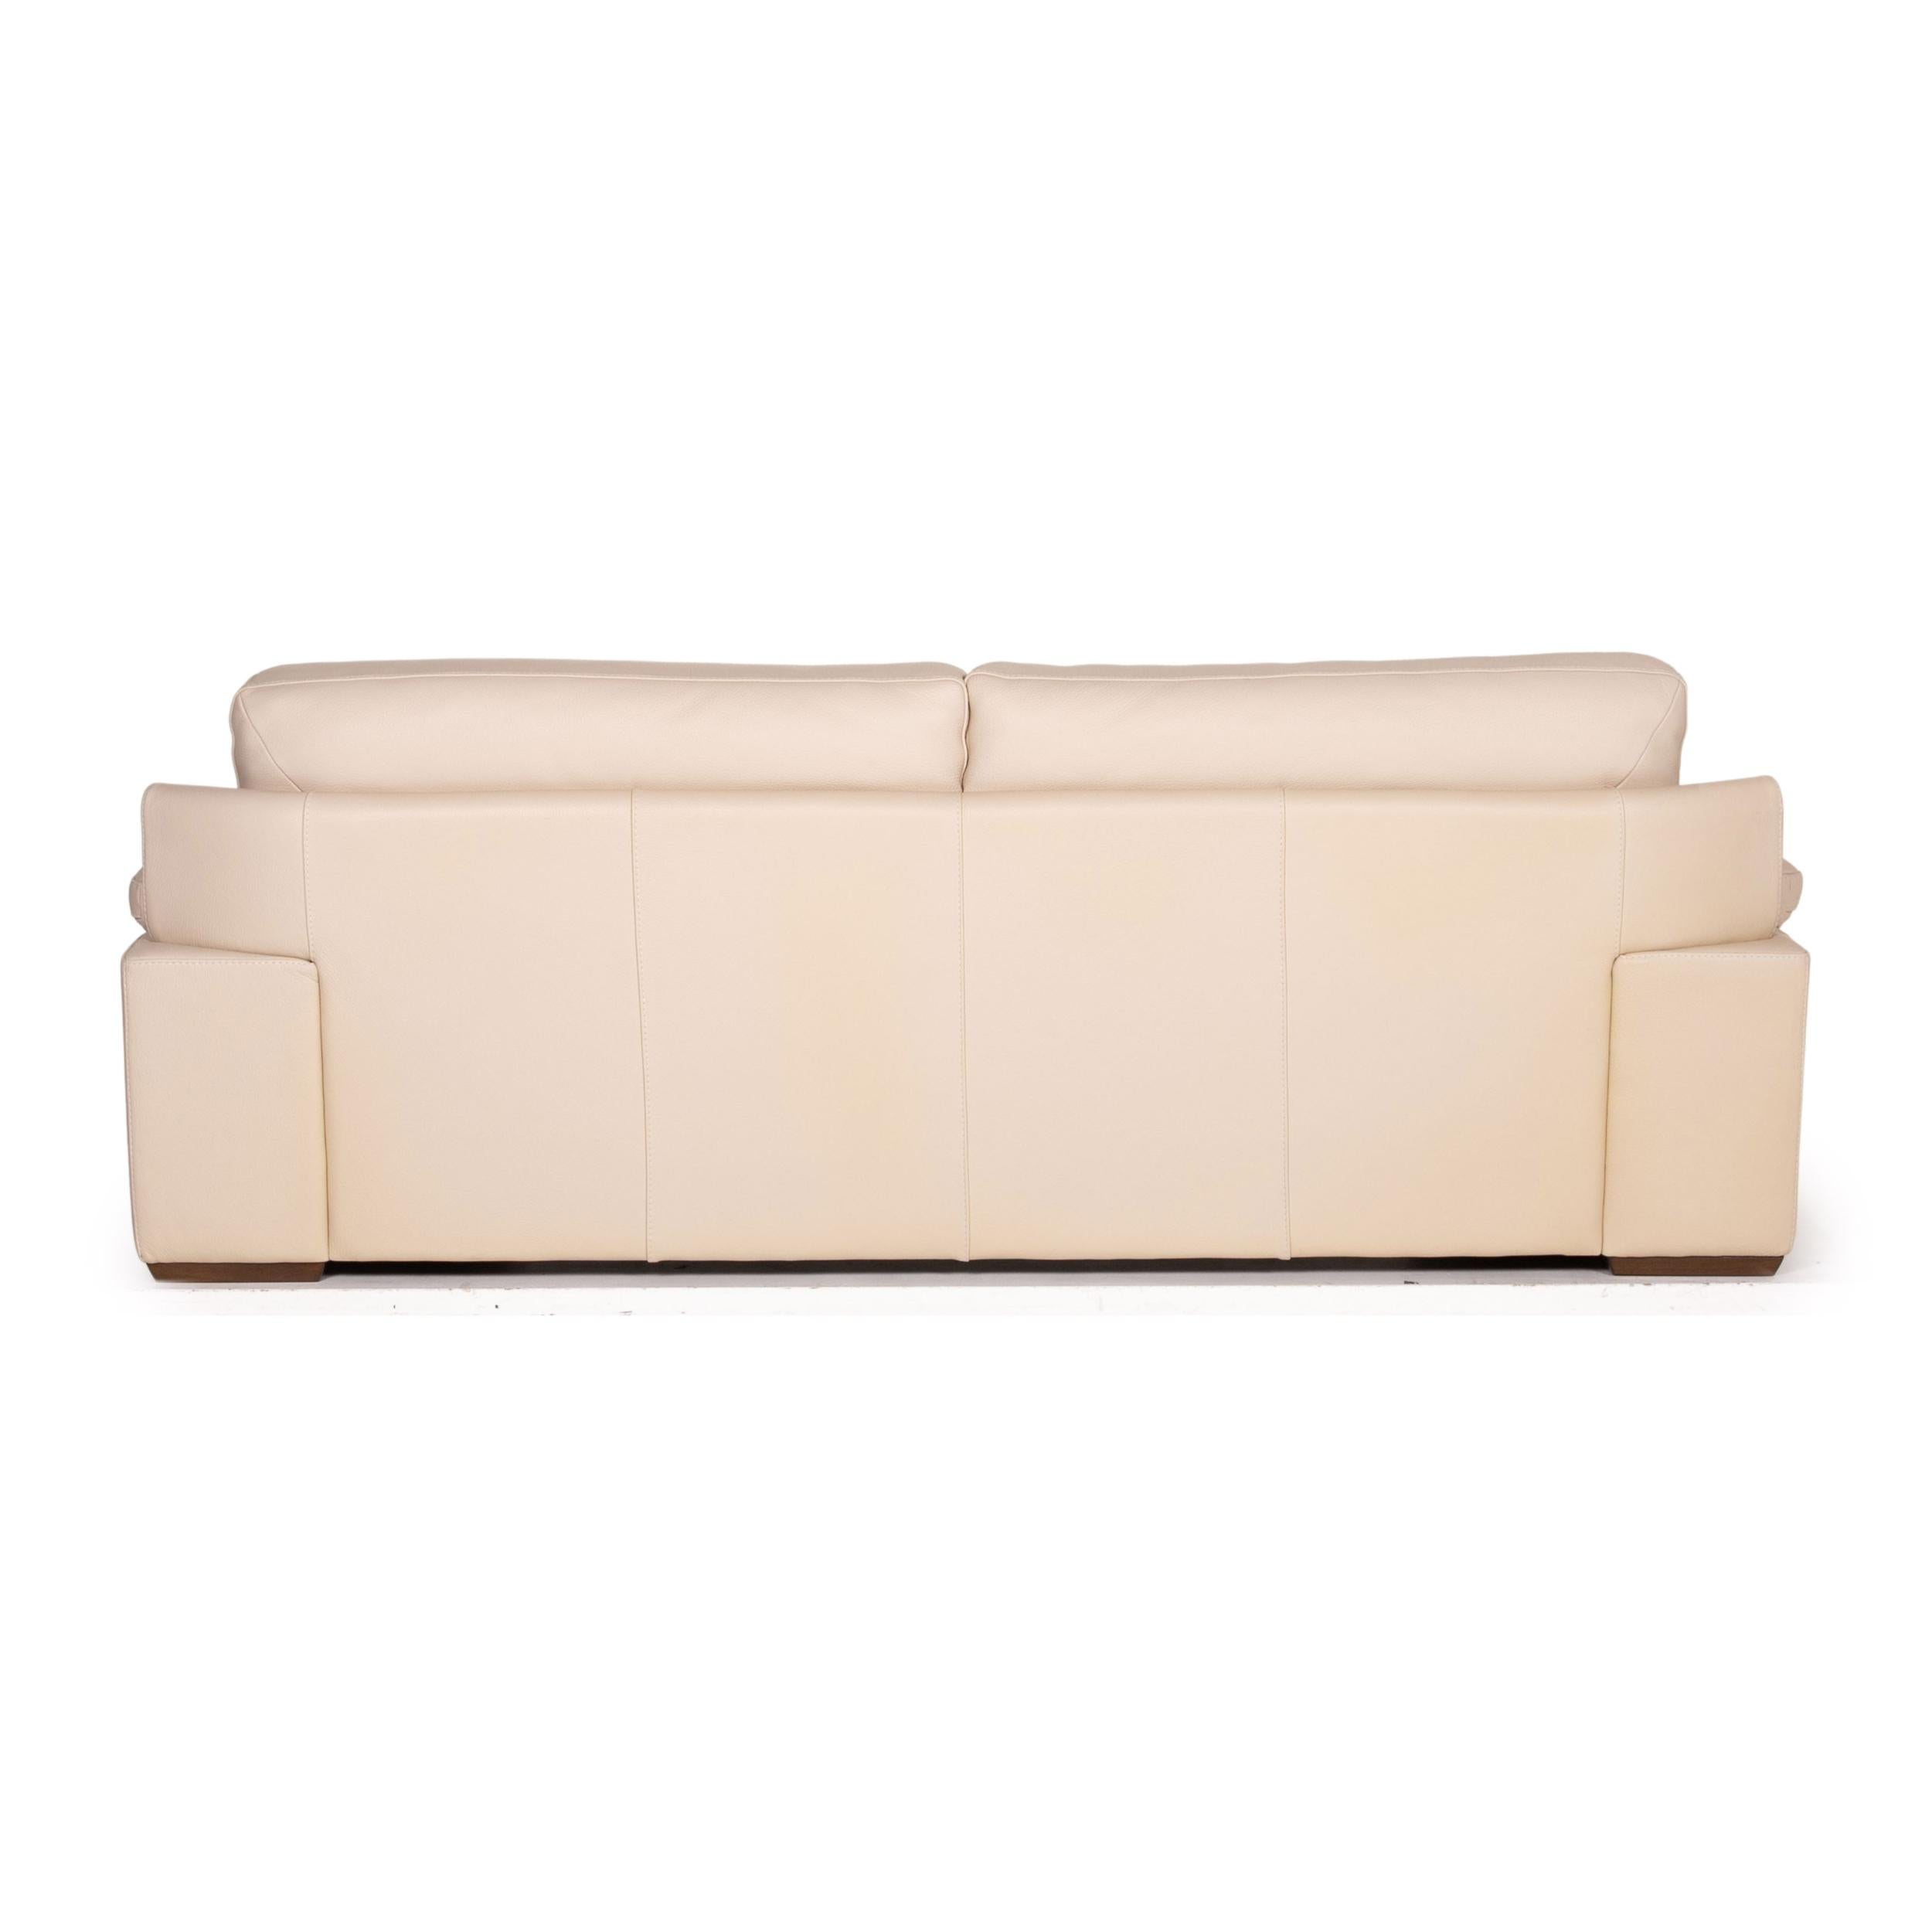 Contemporary Natuzzi 2198 Leather Sofa Cream Three-Seater Couch